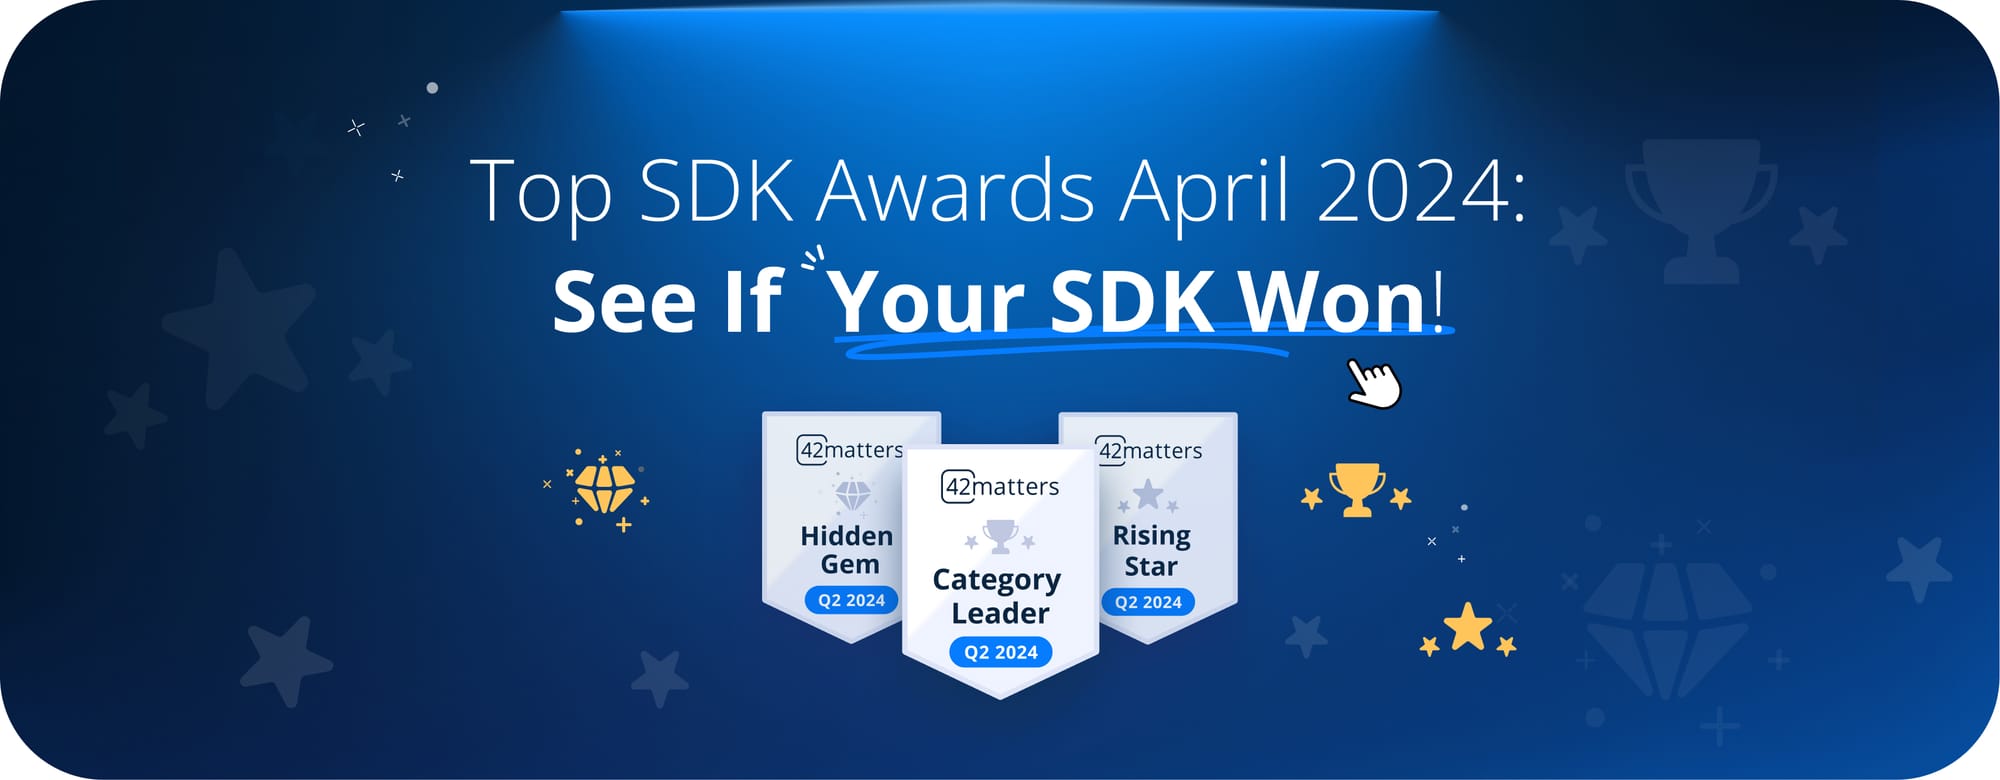 Top SDK Awards April 2024: See If Your SDK Won!